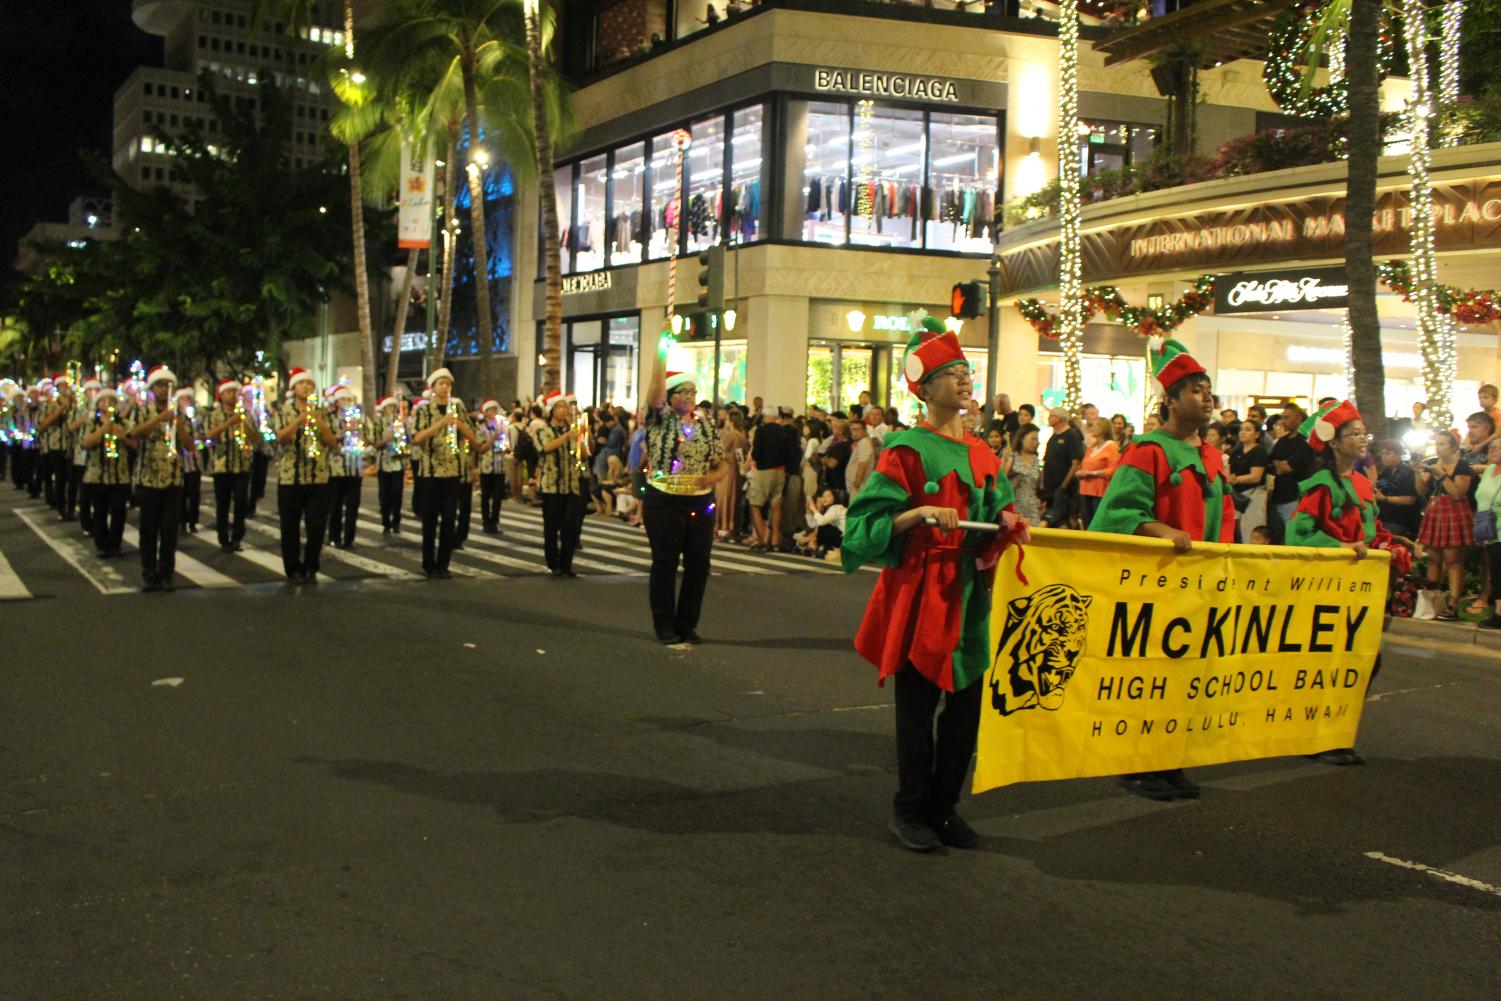 Waikiki Holiday Parade 2019 – The Pinion